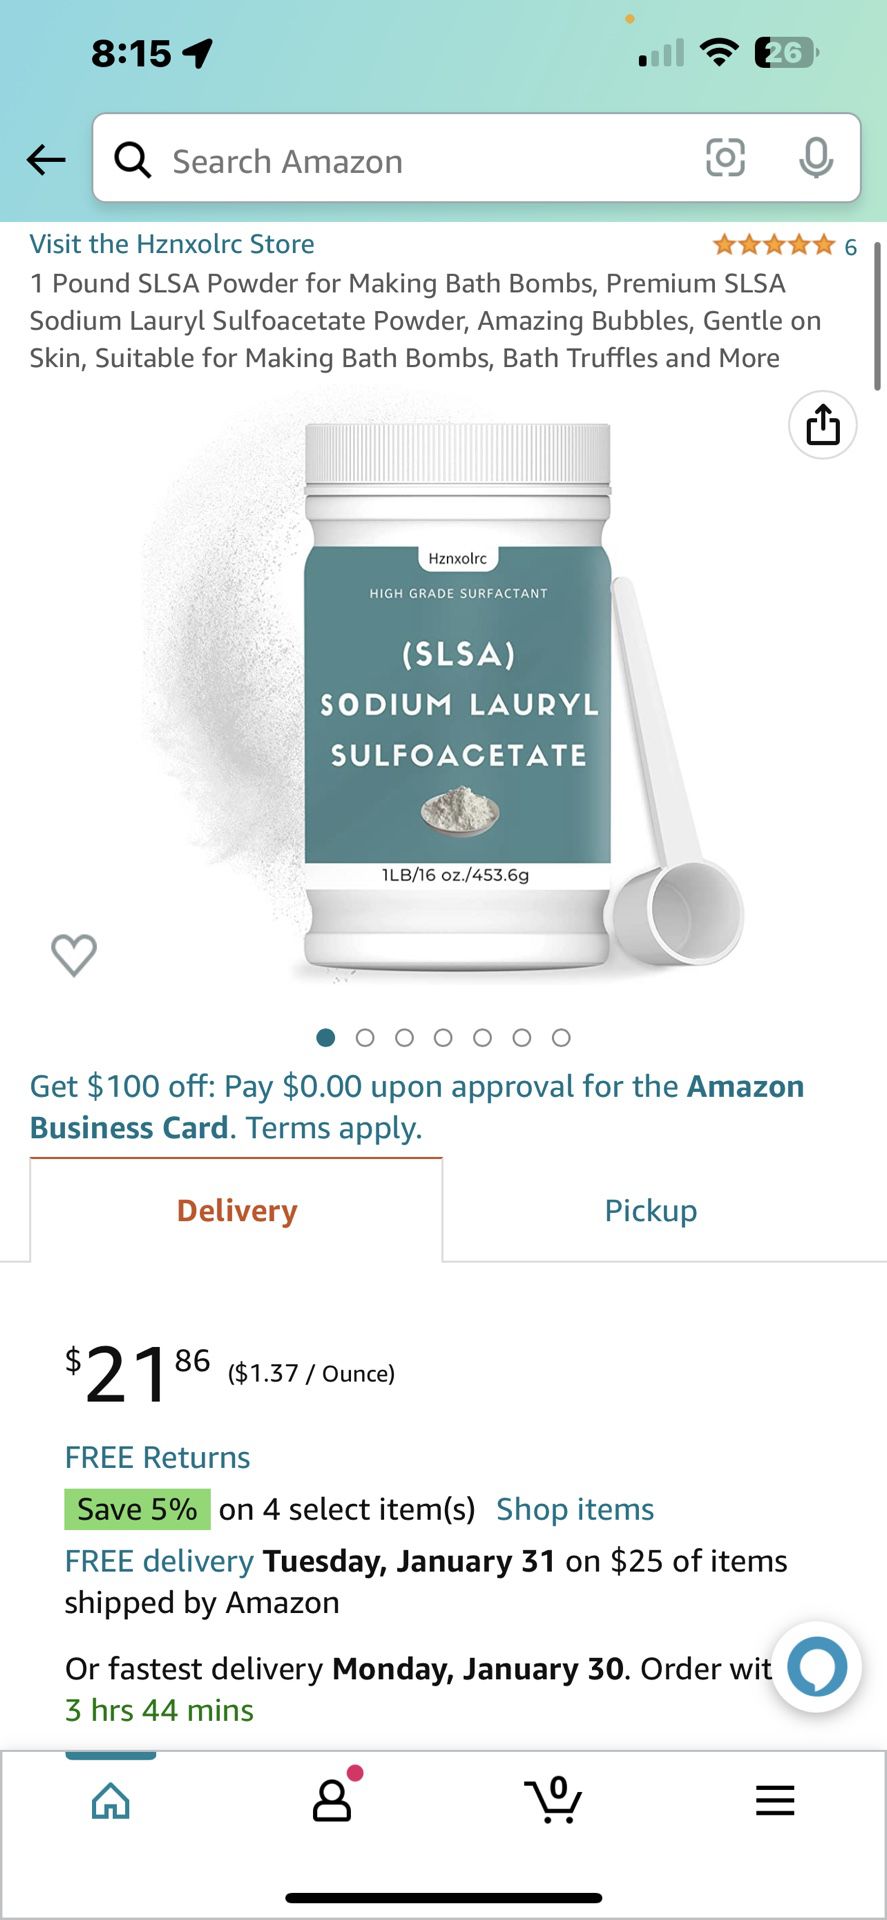 1 Pound SLSA Powder for Making Bath Bombs, Premium SLSA Sodium